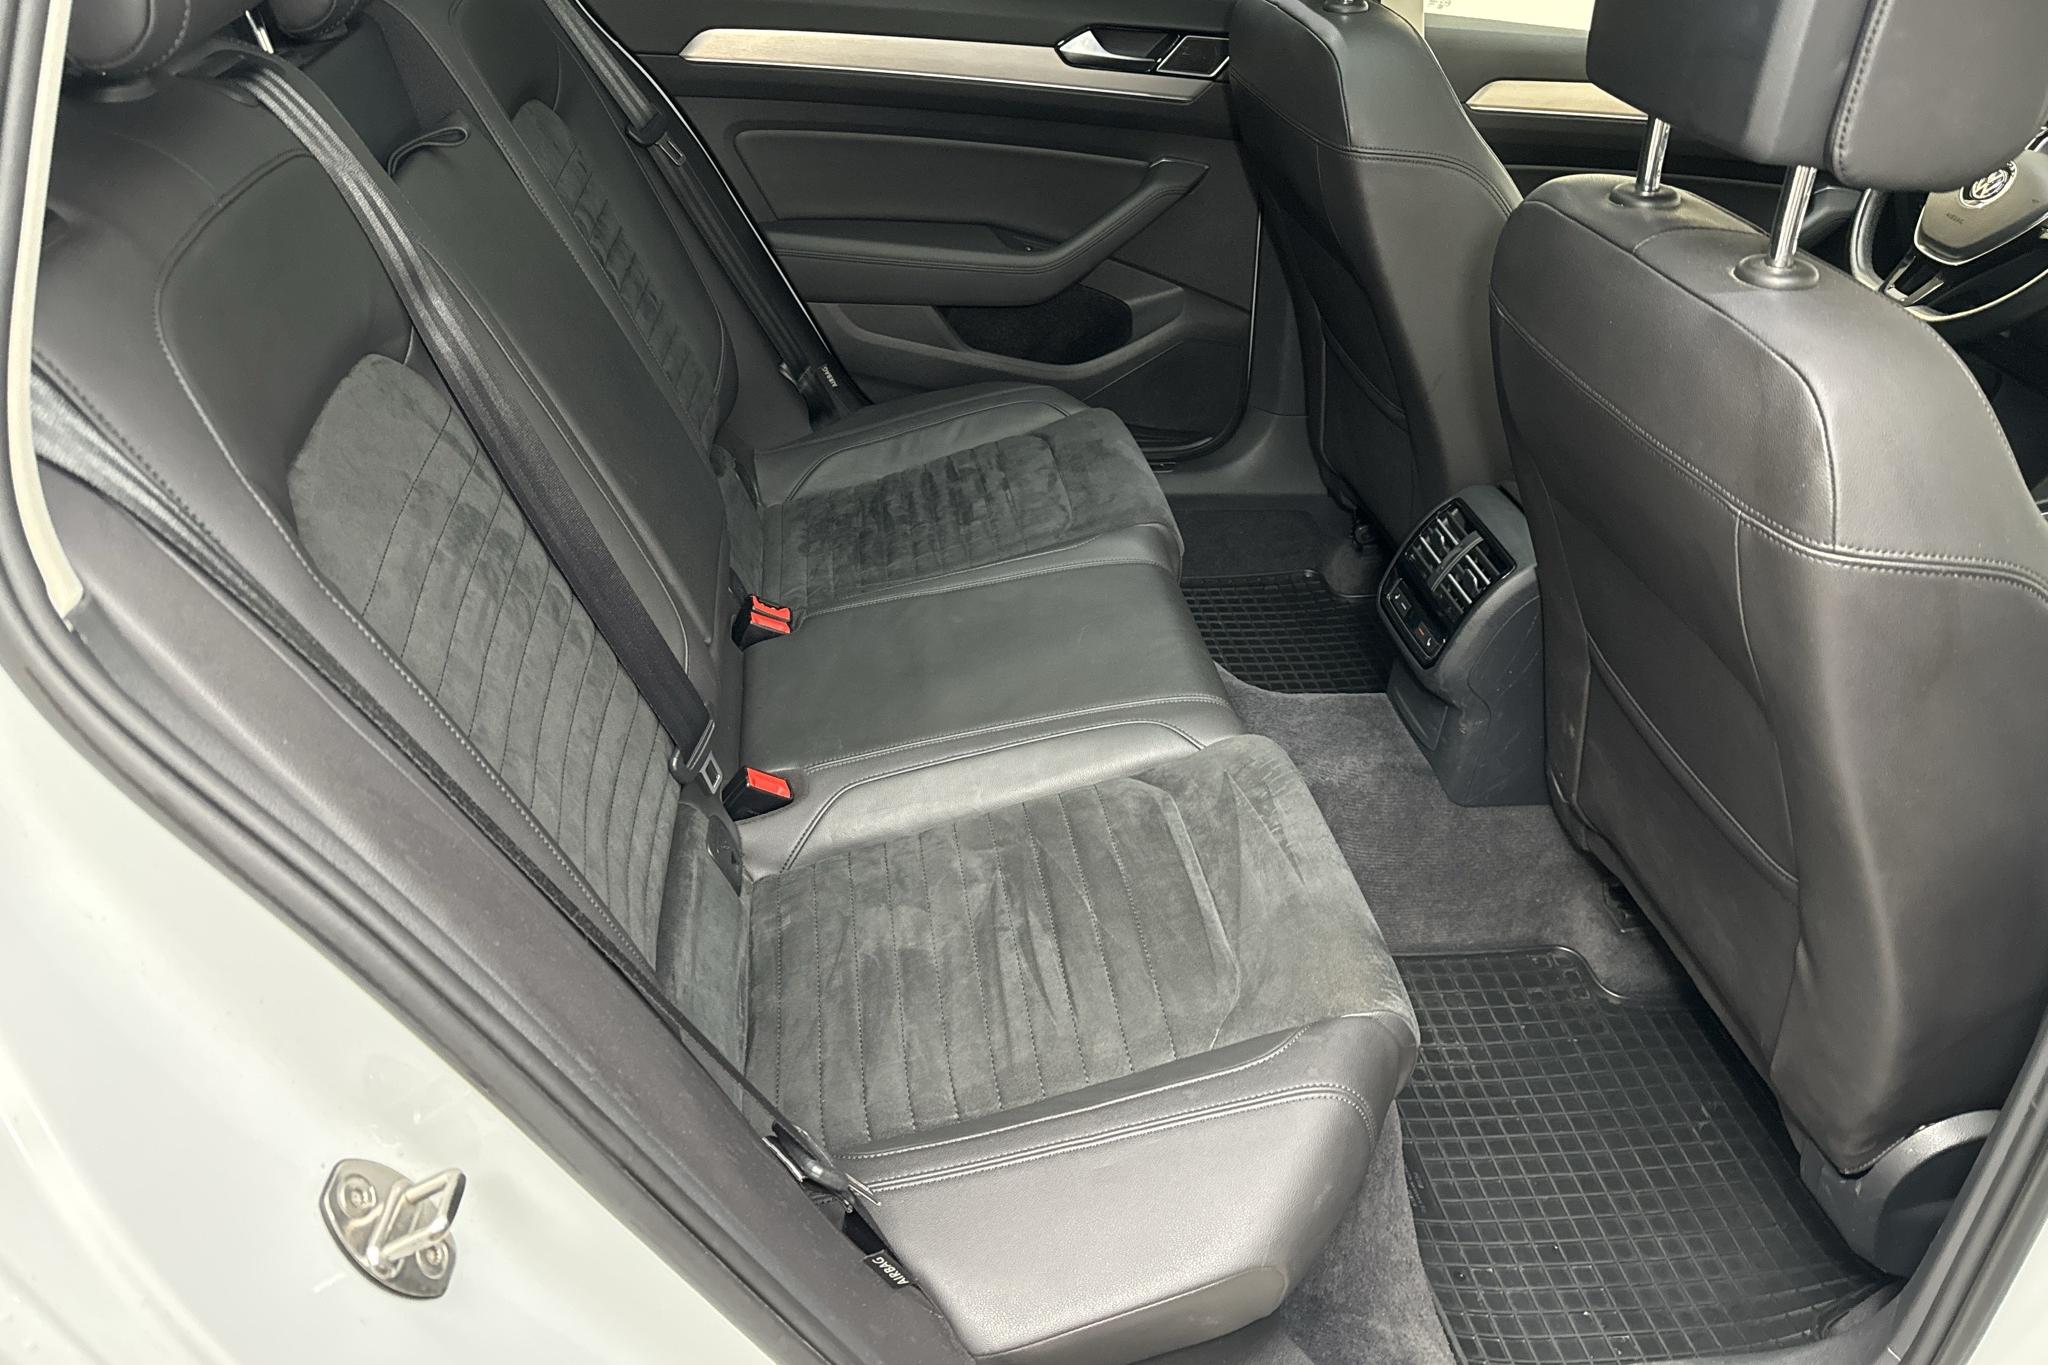 VW Passat 2.0 TDI Sportscombi (190hk) - 11 903 mil - Automat - vit - 2015